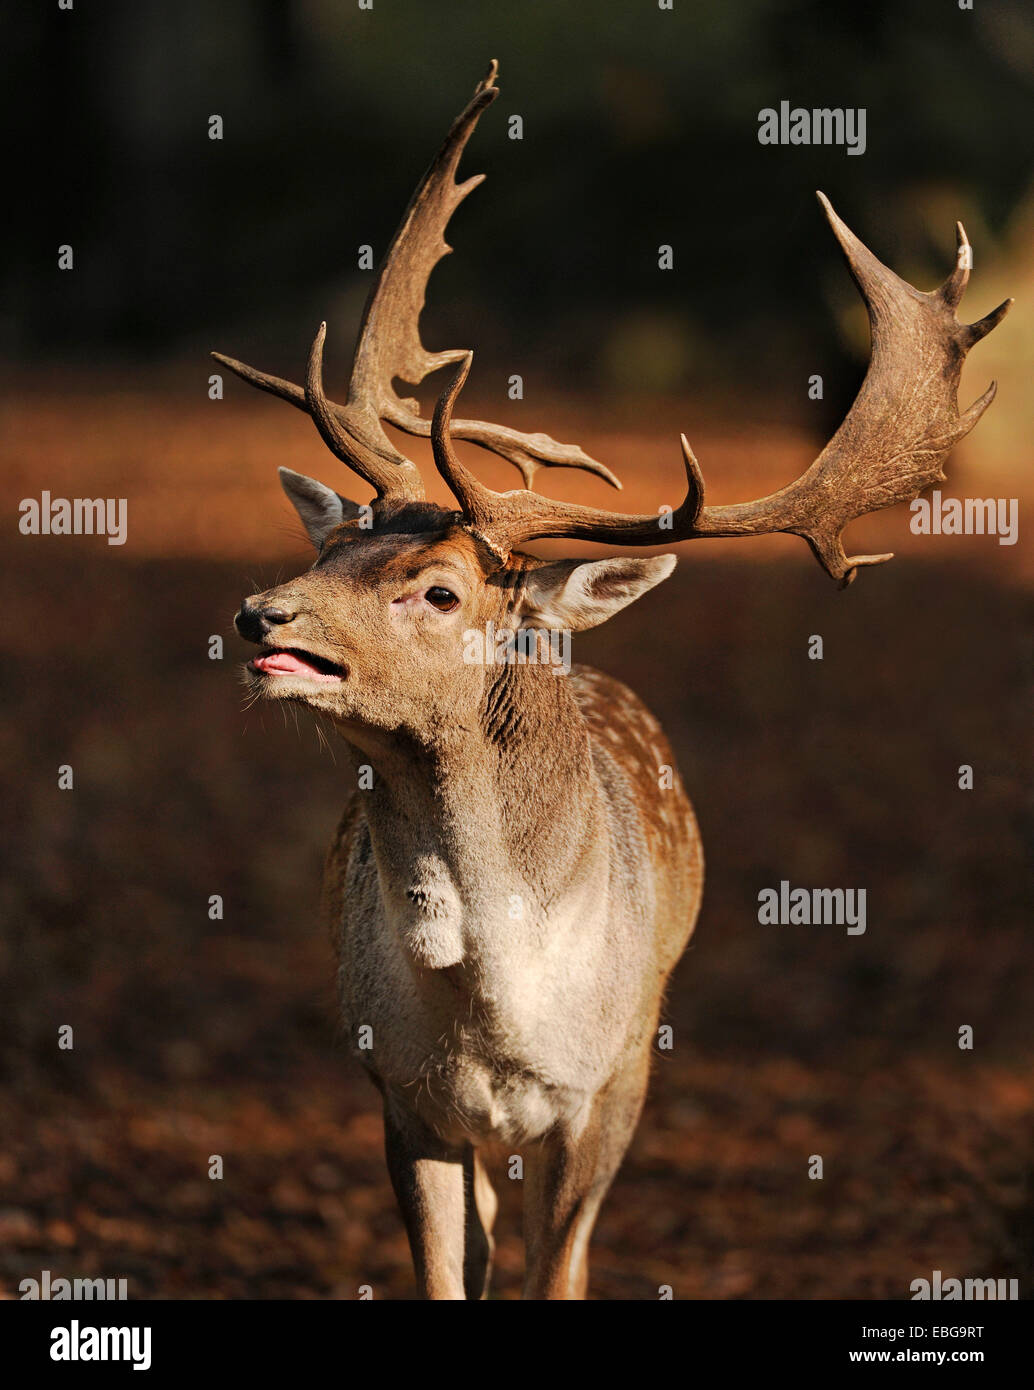 Le daim (Dama dama), buck roaring durant la saison du rut, captive, Basse-Saxe, Allemagne Banque D'Images